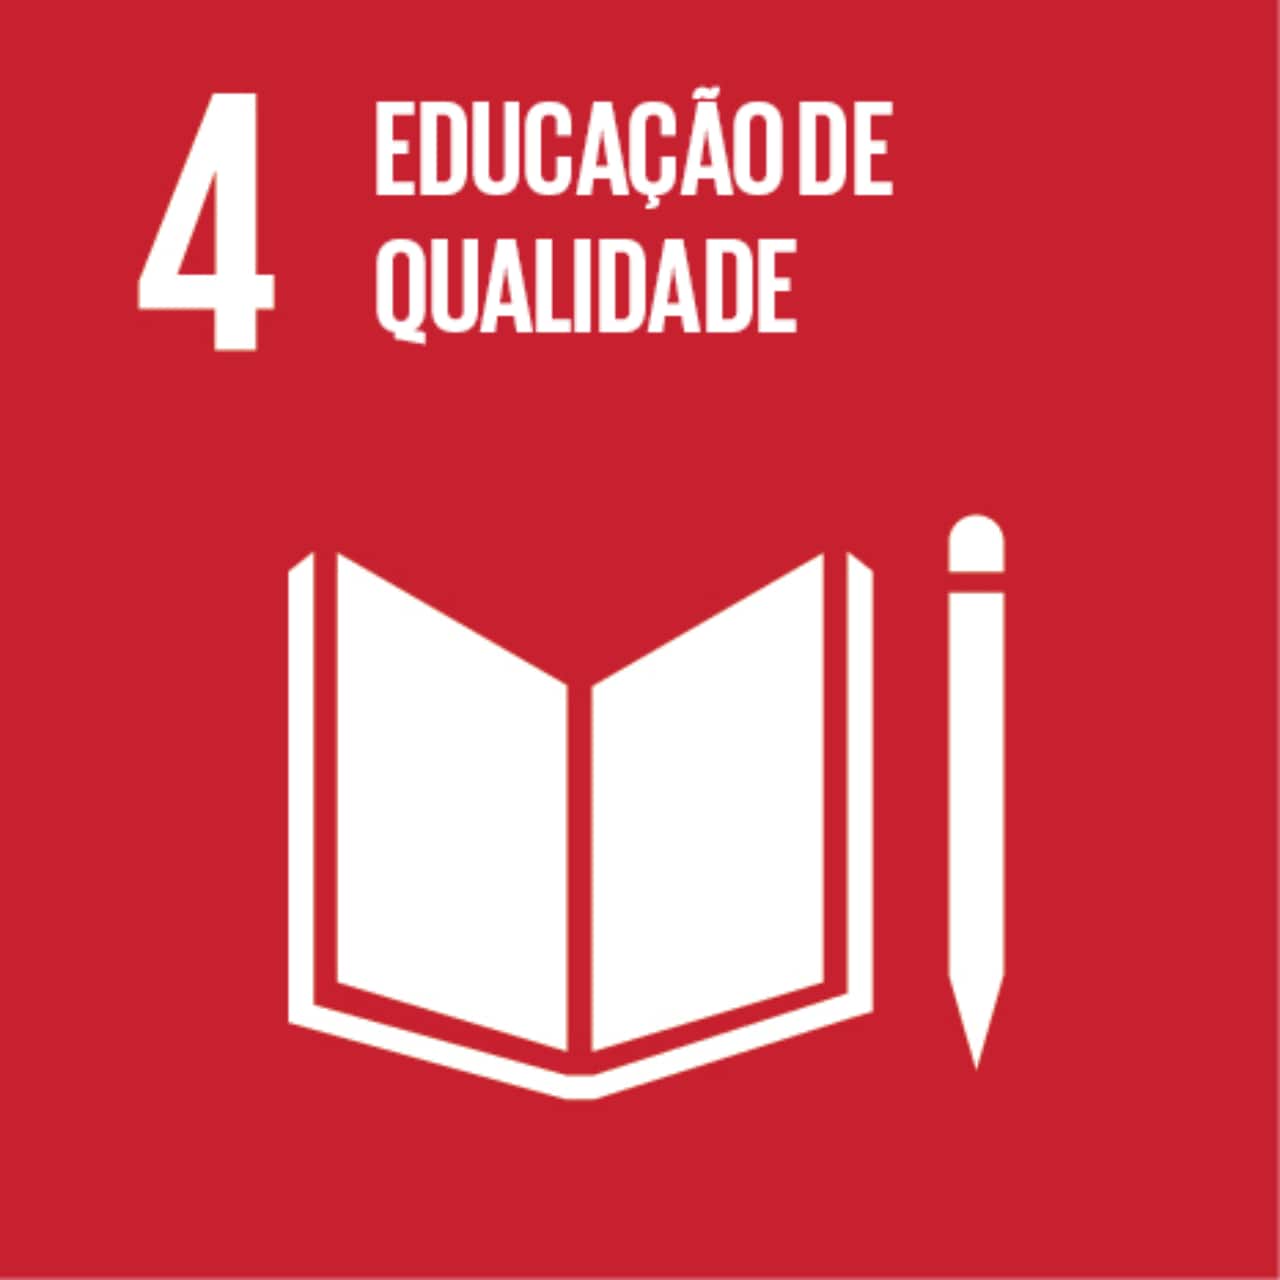 Imagem que representa o ODS número Quatro – Educação de qualidade, com fundo vermelho e os ícones de um caderno e um lápis.